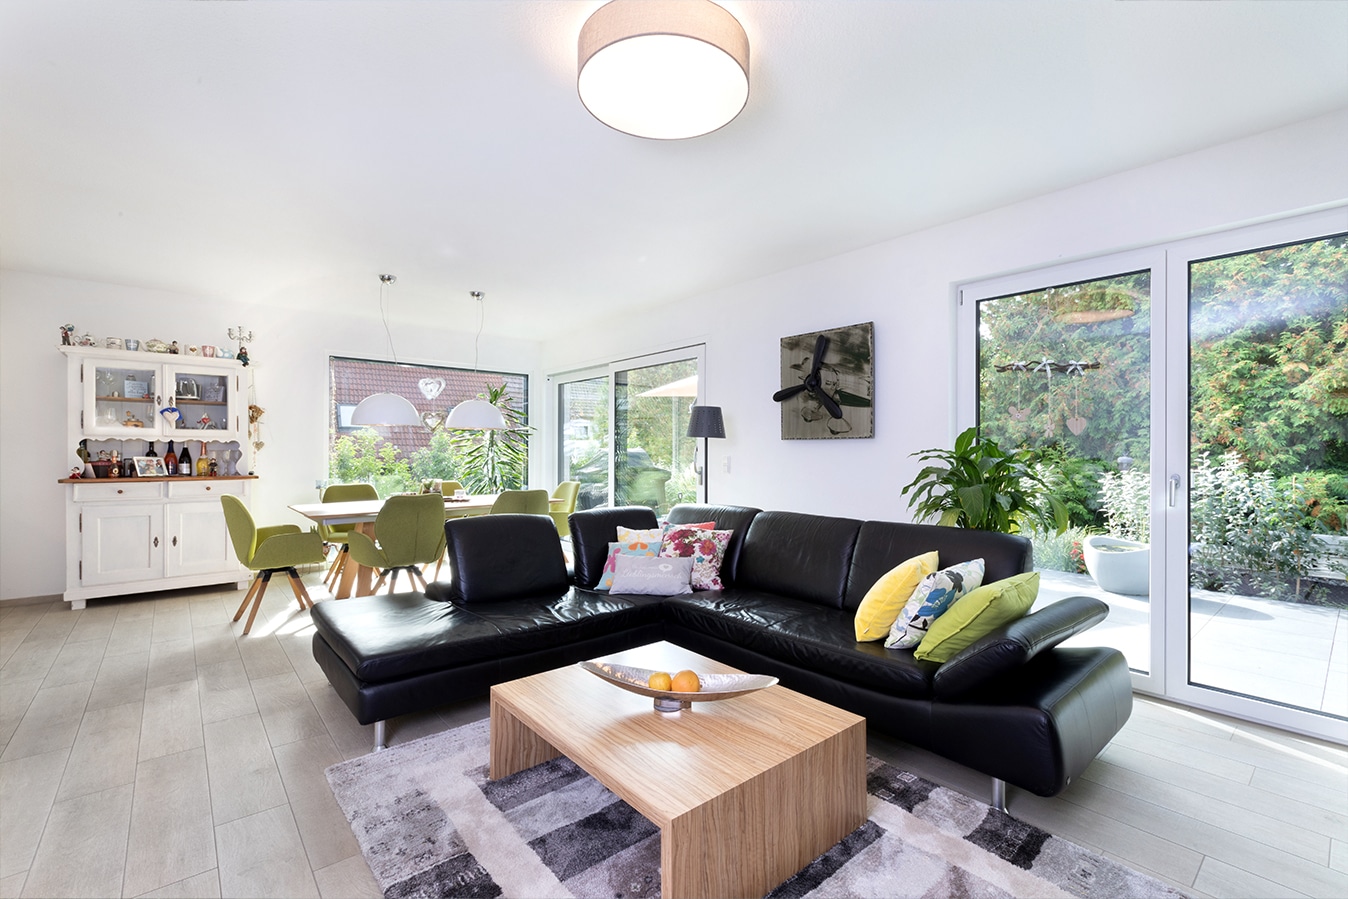 Walmdachbungalow-offener-wohn-essbereich-mit-schwarzem-sofa